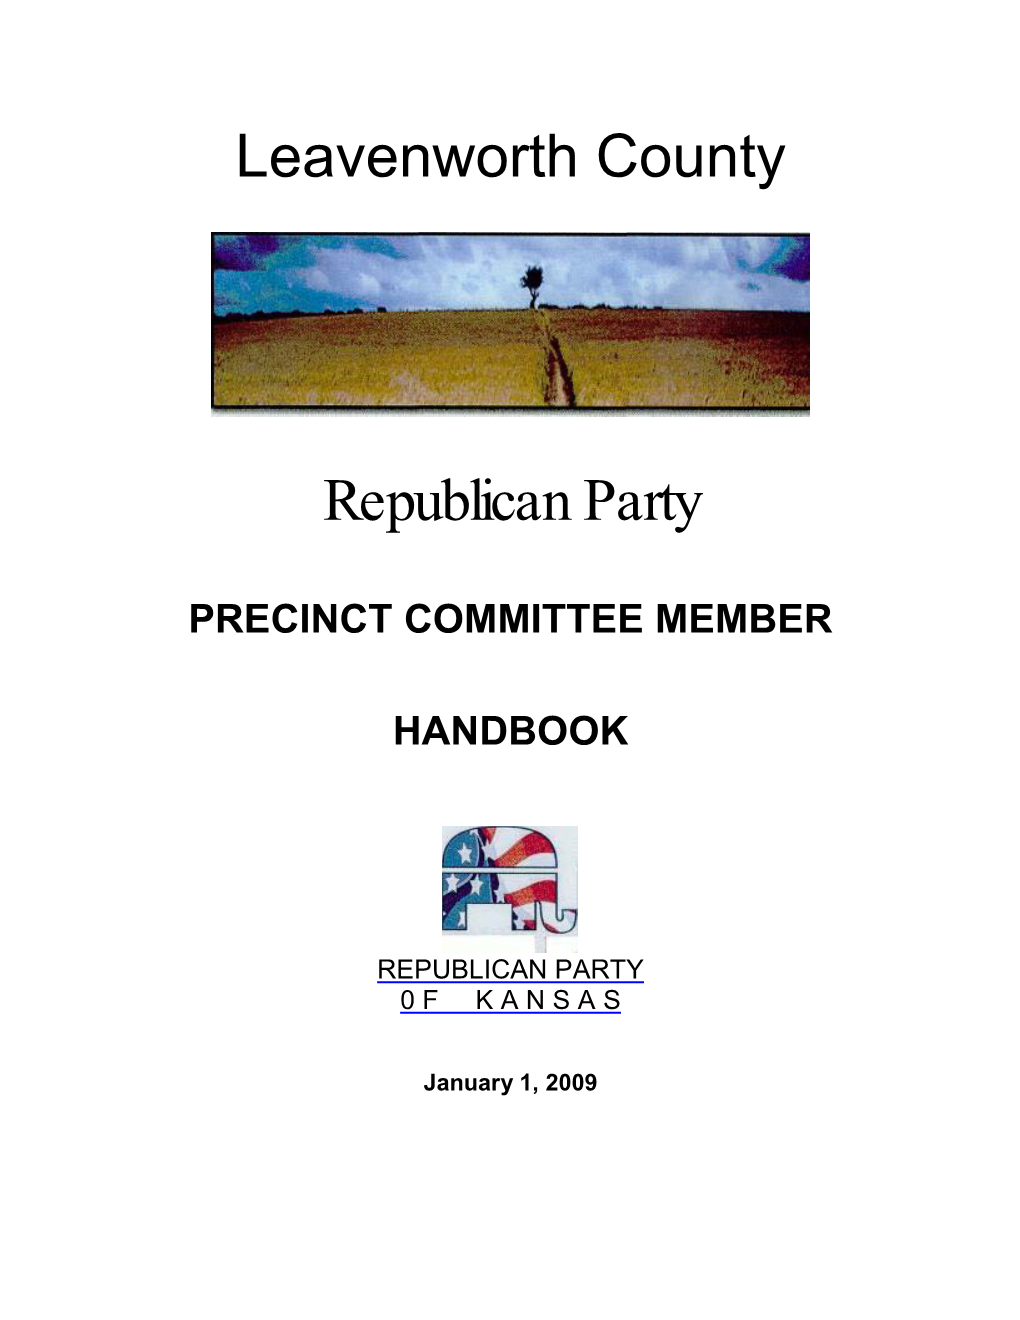 Precinct Committee Member Handbook